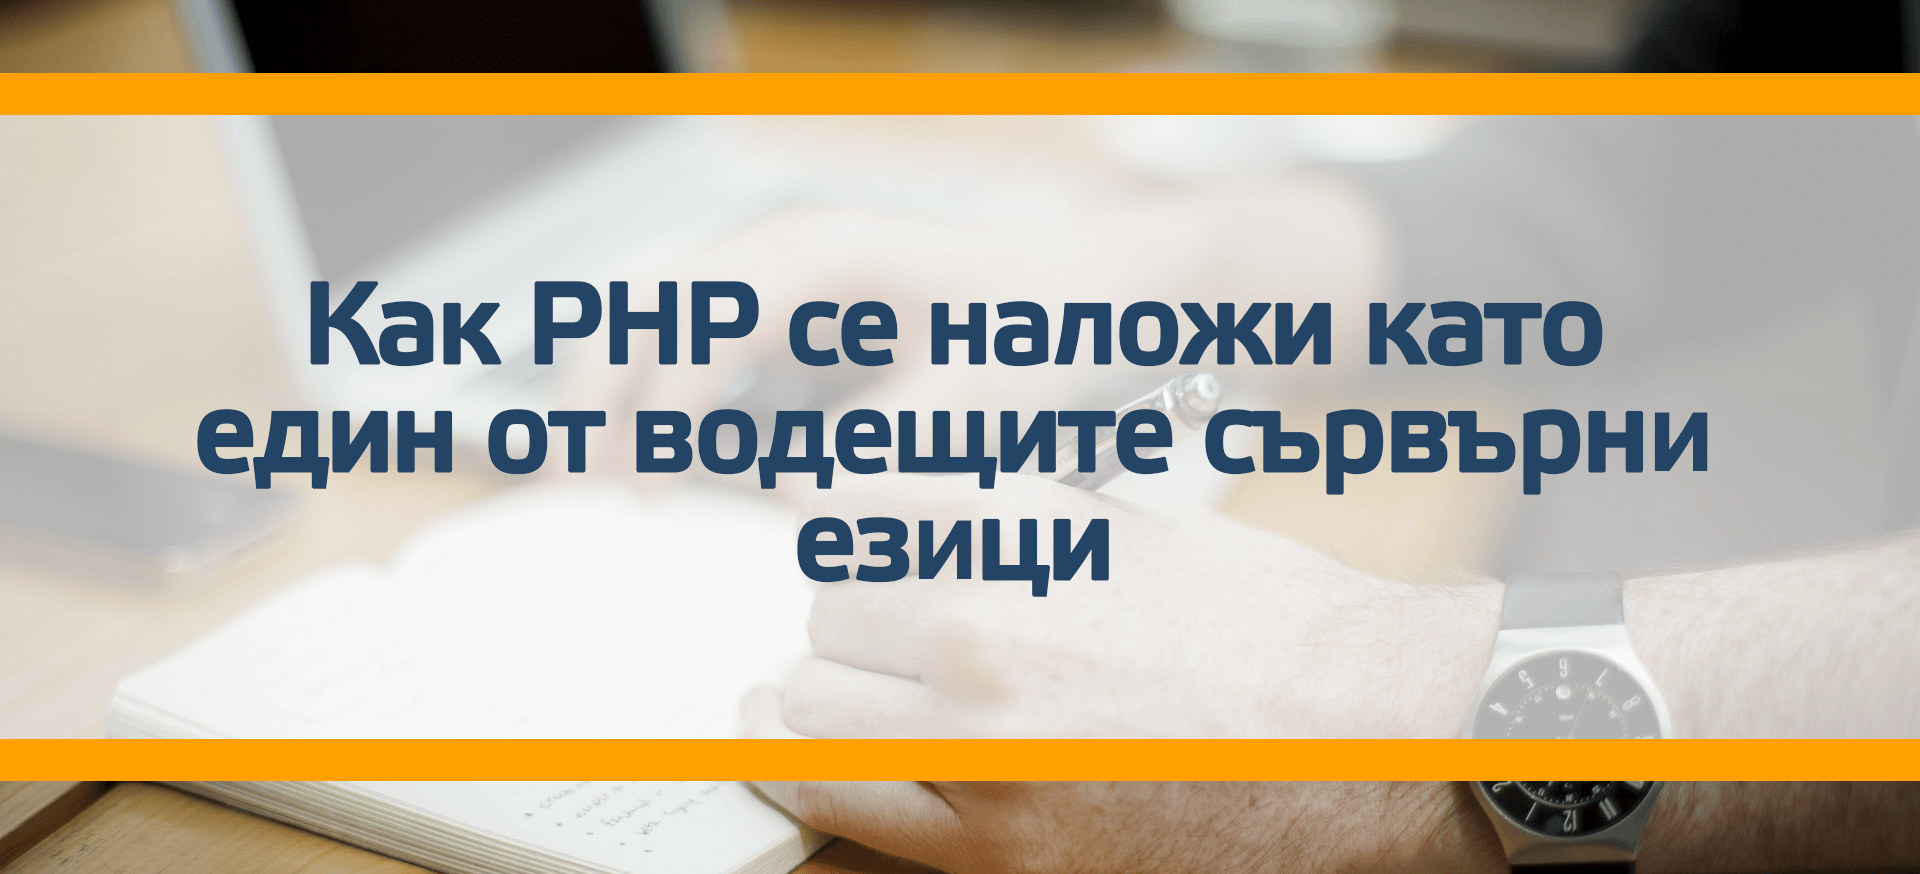 Как PHP се наложи като един от водещите сървърни езици